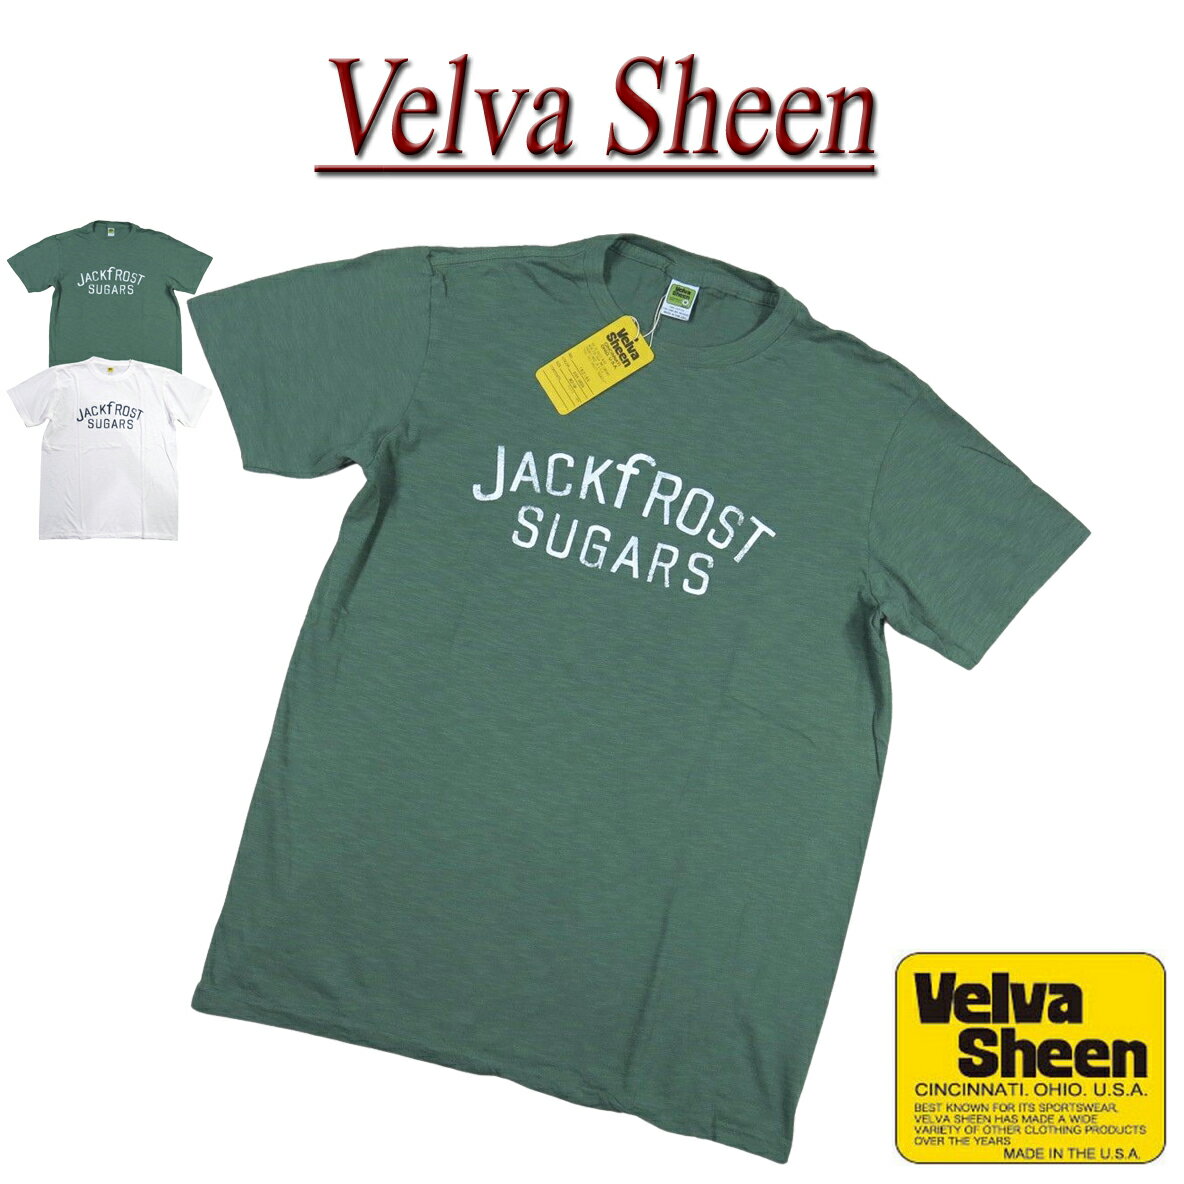 【2色4サイズ】 je631 新品 Velva Sheen USA製 JACK FROST SUGARS TEE 半袖 スラブ Tシャツ 162195 メンズ ベルバシーン ティーシャツ イエローレーベル Made in USA 【smtb-kd】